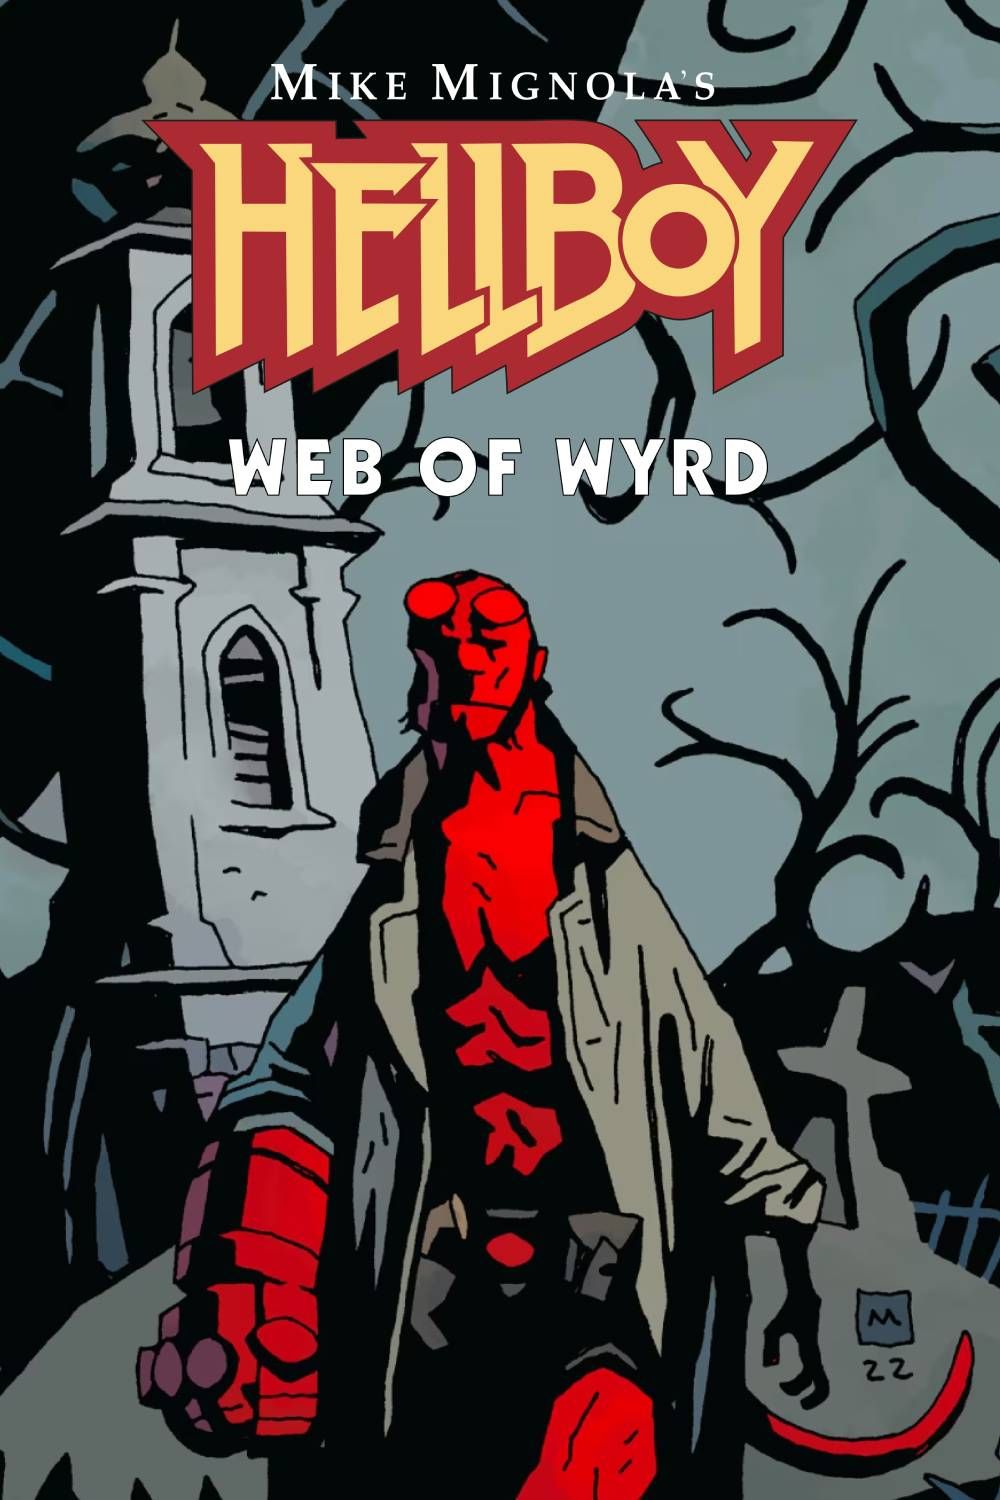 Couverture de Hellboy Web of Wyrd, mettant en vedette Hellboy dessiné par Mike Mignola debout dans un cimetière gris